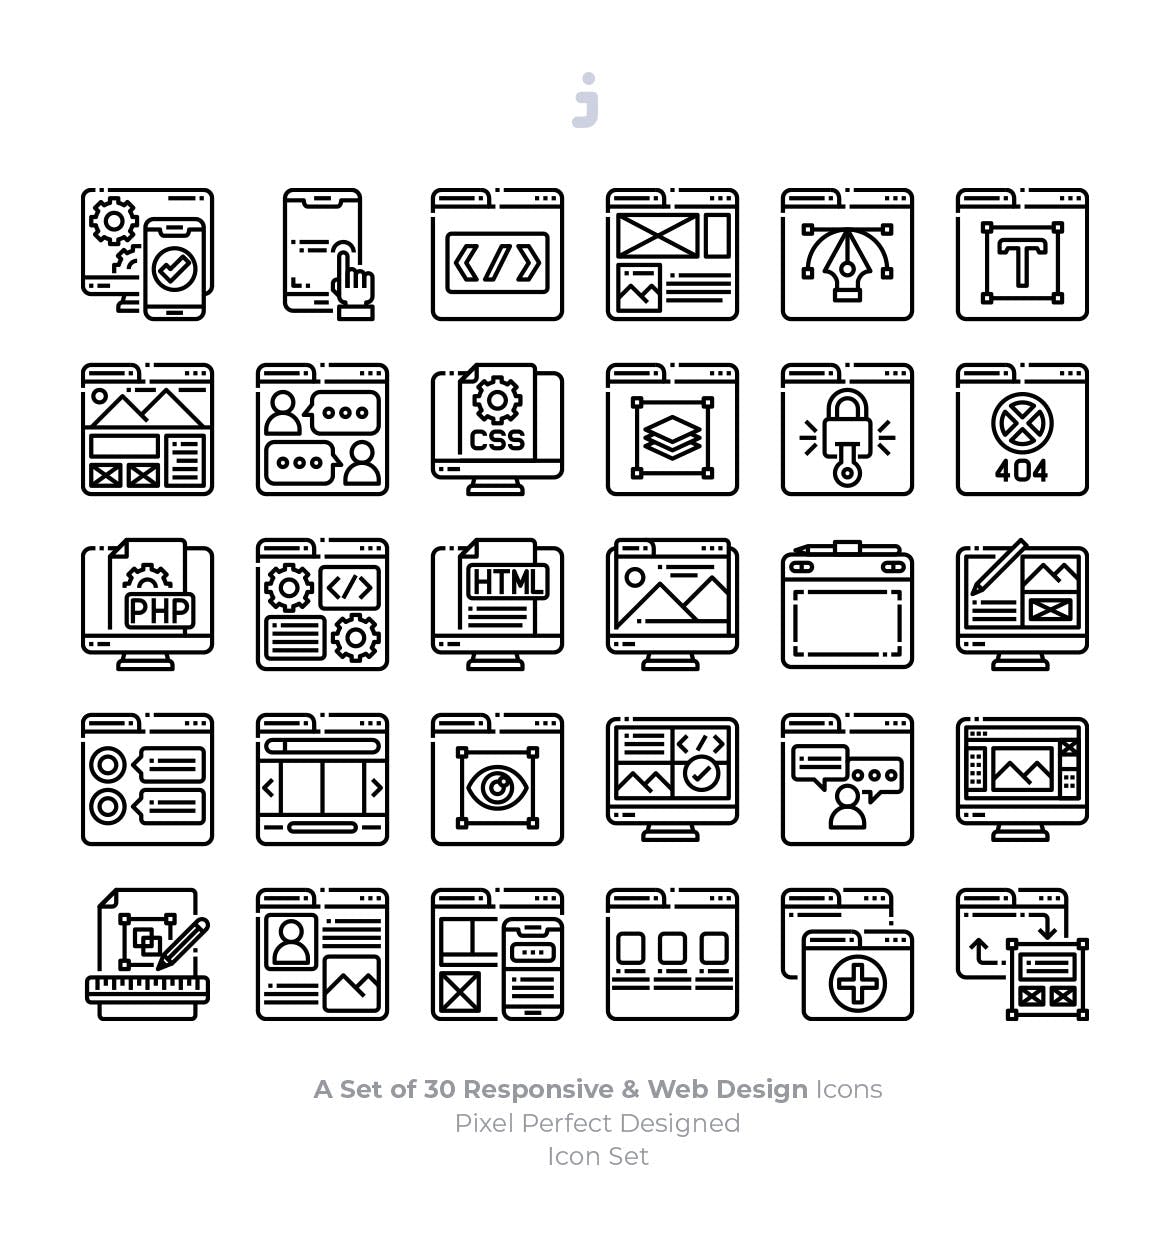 30枚彩色响应式网站设计矢量第一素材精选图标 30 Responsive & Web Design Icons插图(2)